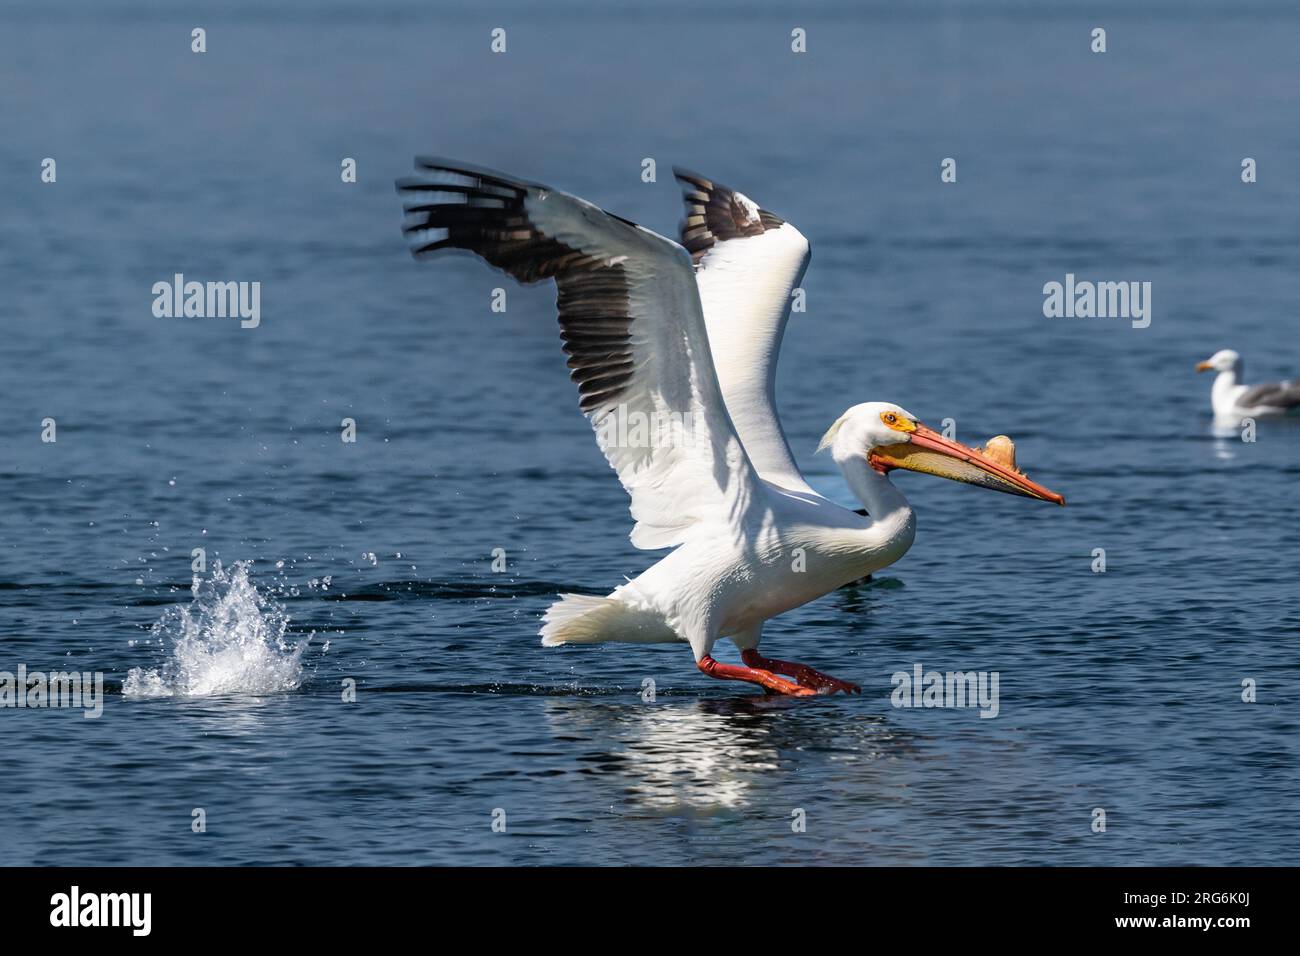 American White Pelican (Pelecanus erythrorhynchos), ali sparse, atterraggio sull'acqua. Spruzzi d'acqua dietro. Morro Bay, California. Foto Stock